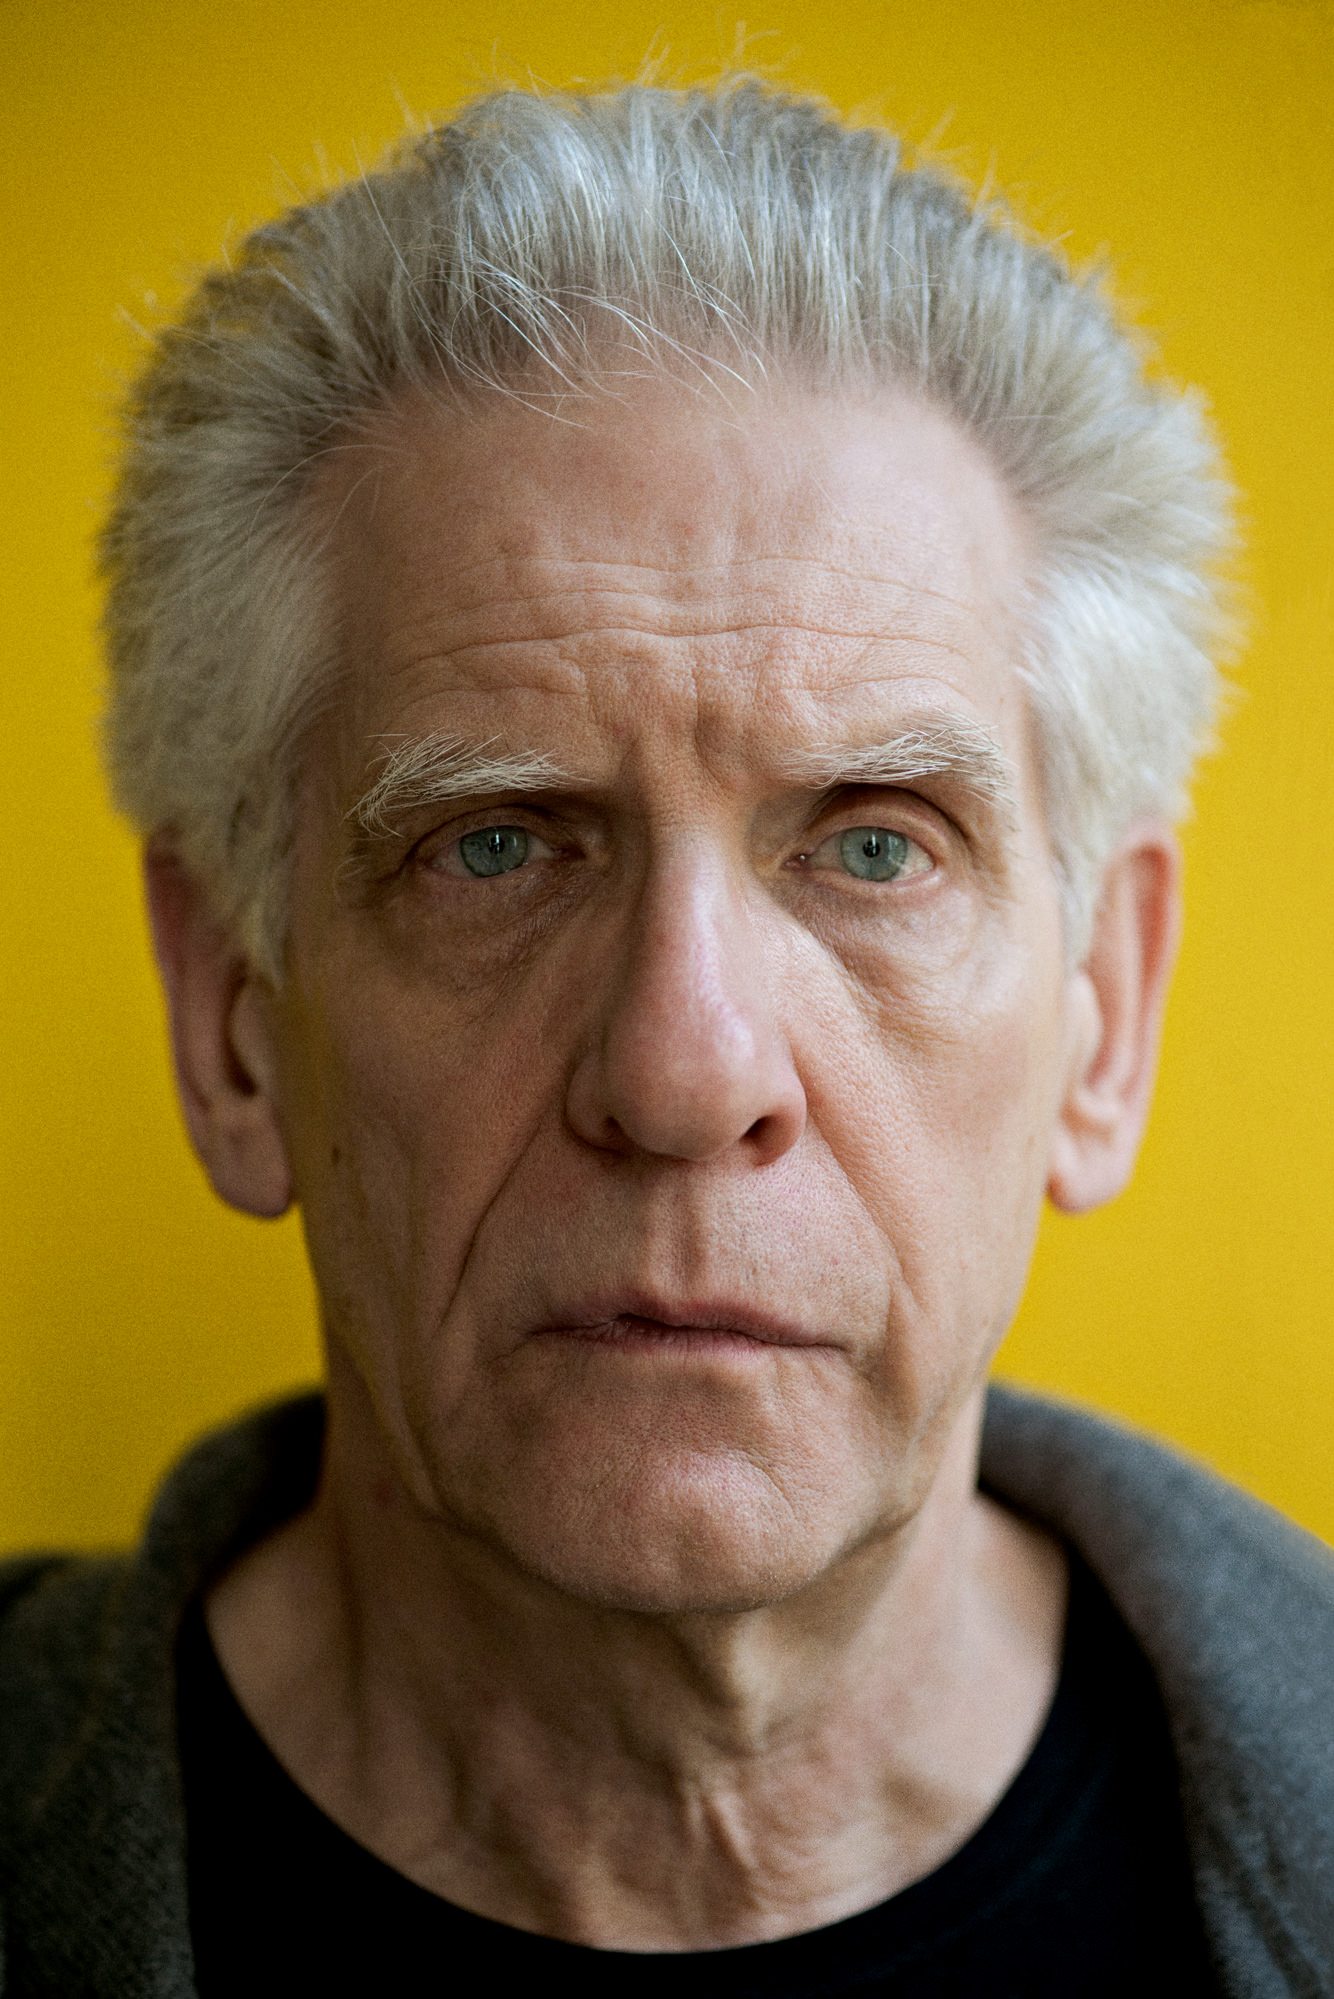 David Cronenberg portrait by Éric Nehr for Numéro